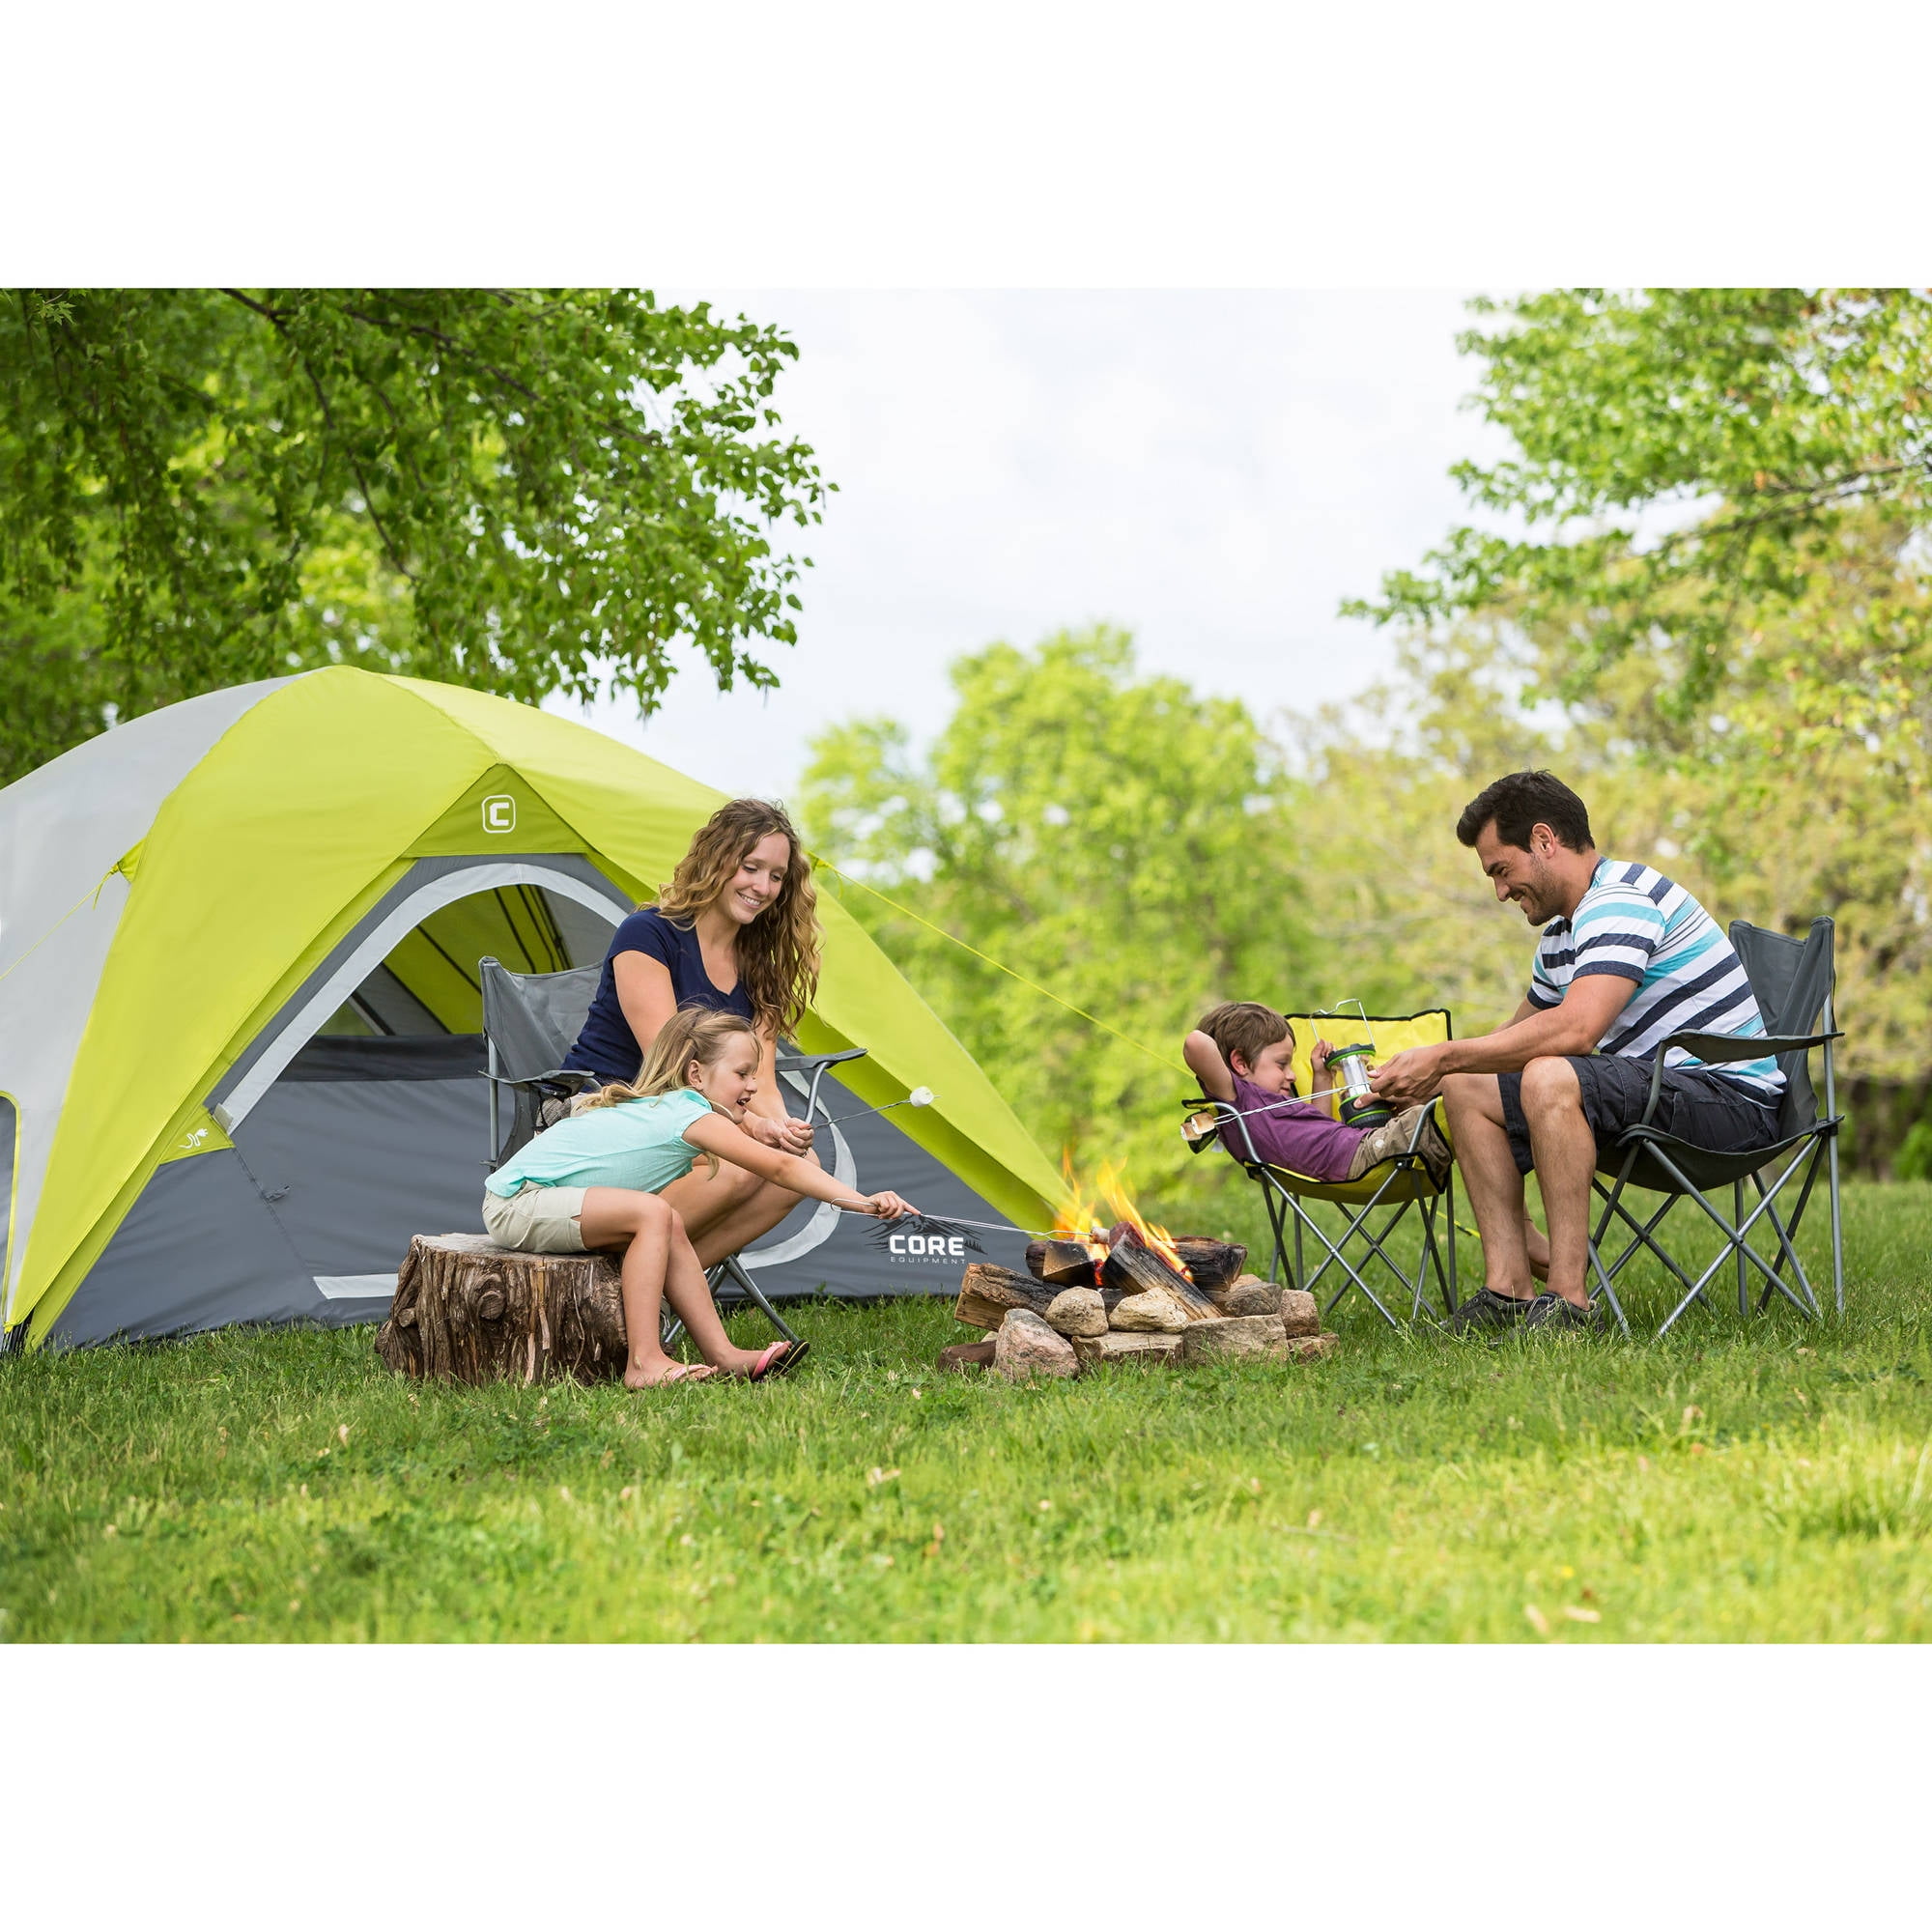 Core Equipment 4-Person Dome Tent - Walmart.com